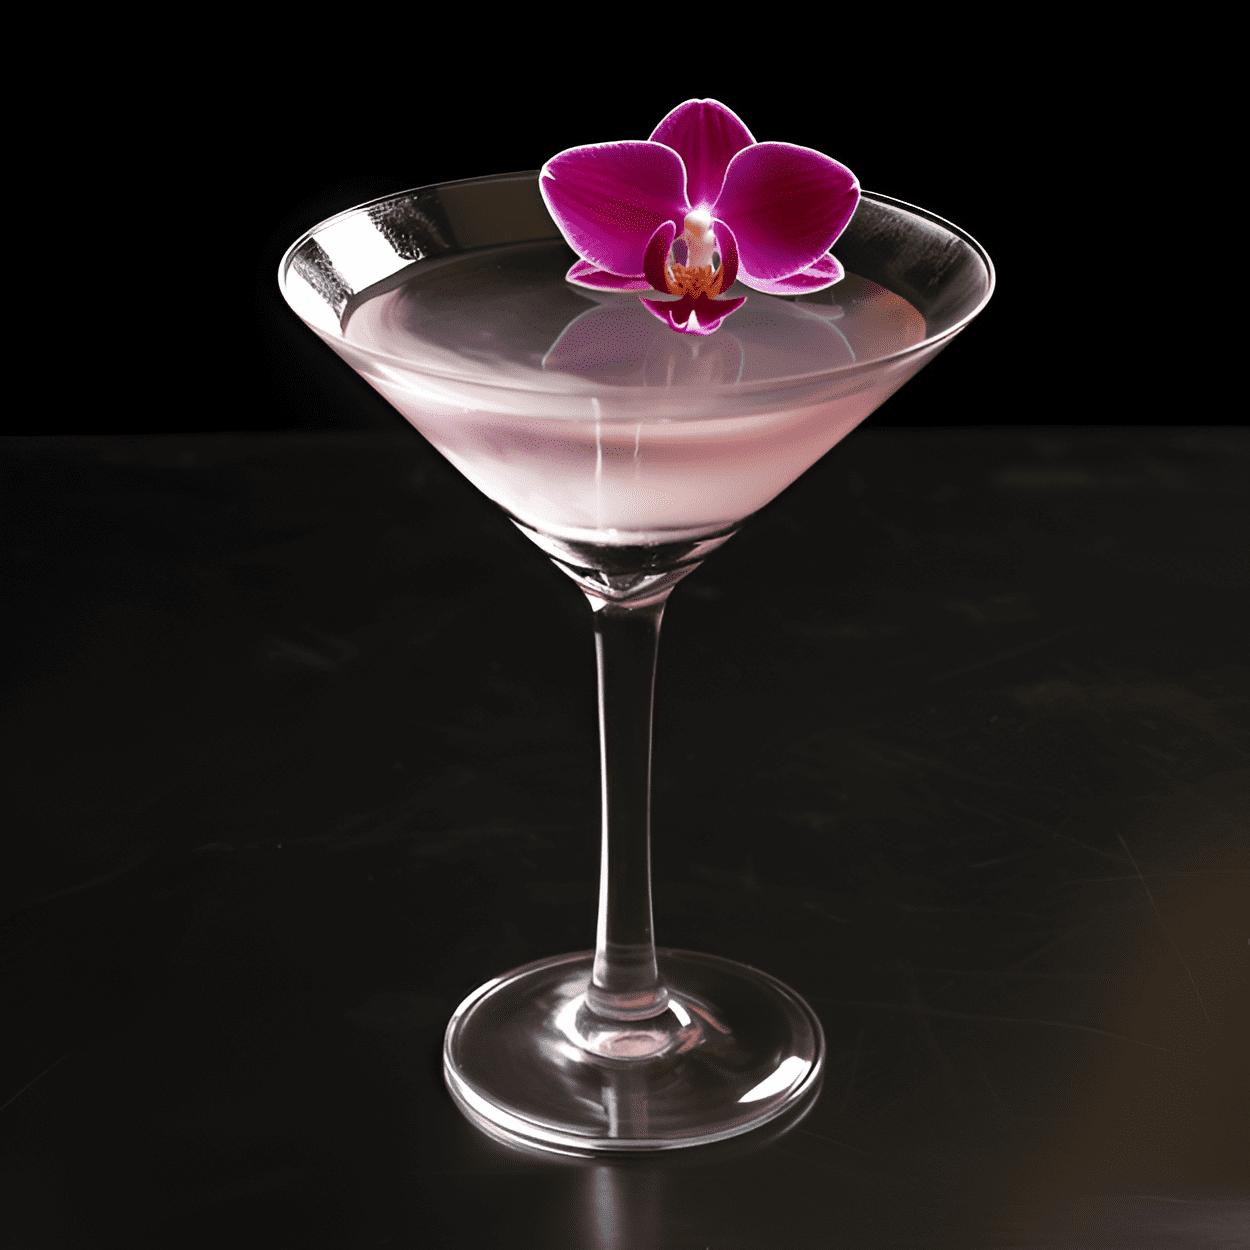 Black Orchid Cóctel Receta - El Black Orchid tiene un sabor suave, afrutado y ligeramente dulce. Es una mezcla armoniosa de los sabores tropicales de lichi y limón, con un toque de vainilla del vodka. El sabor se redondea con una sutil nota floral del adorno de orquídea.